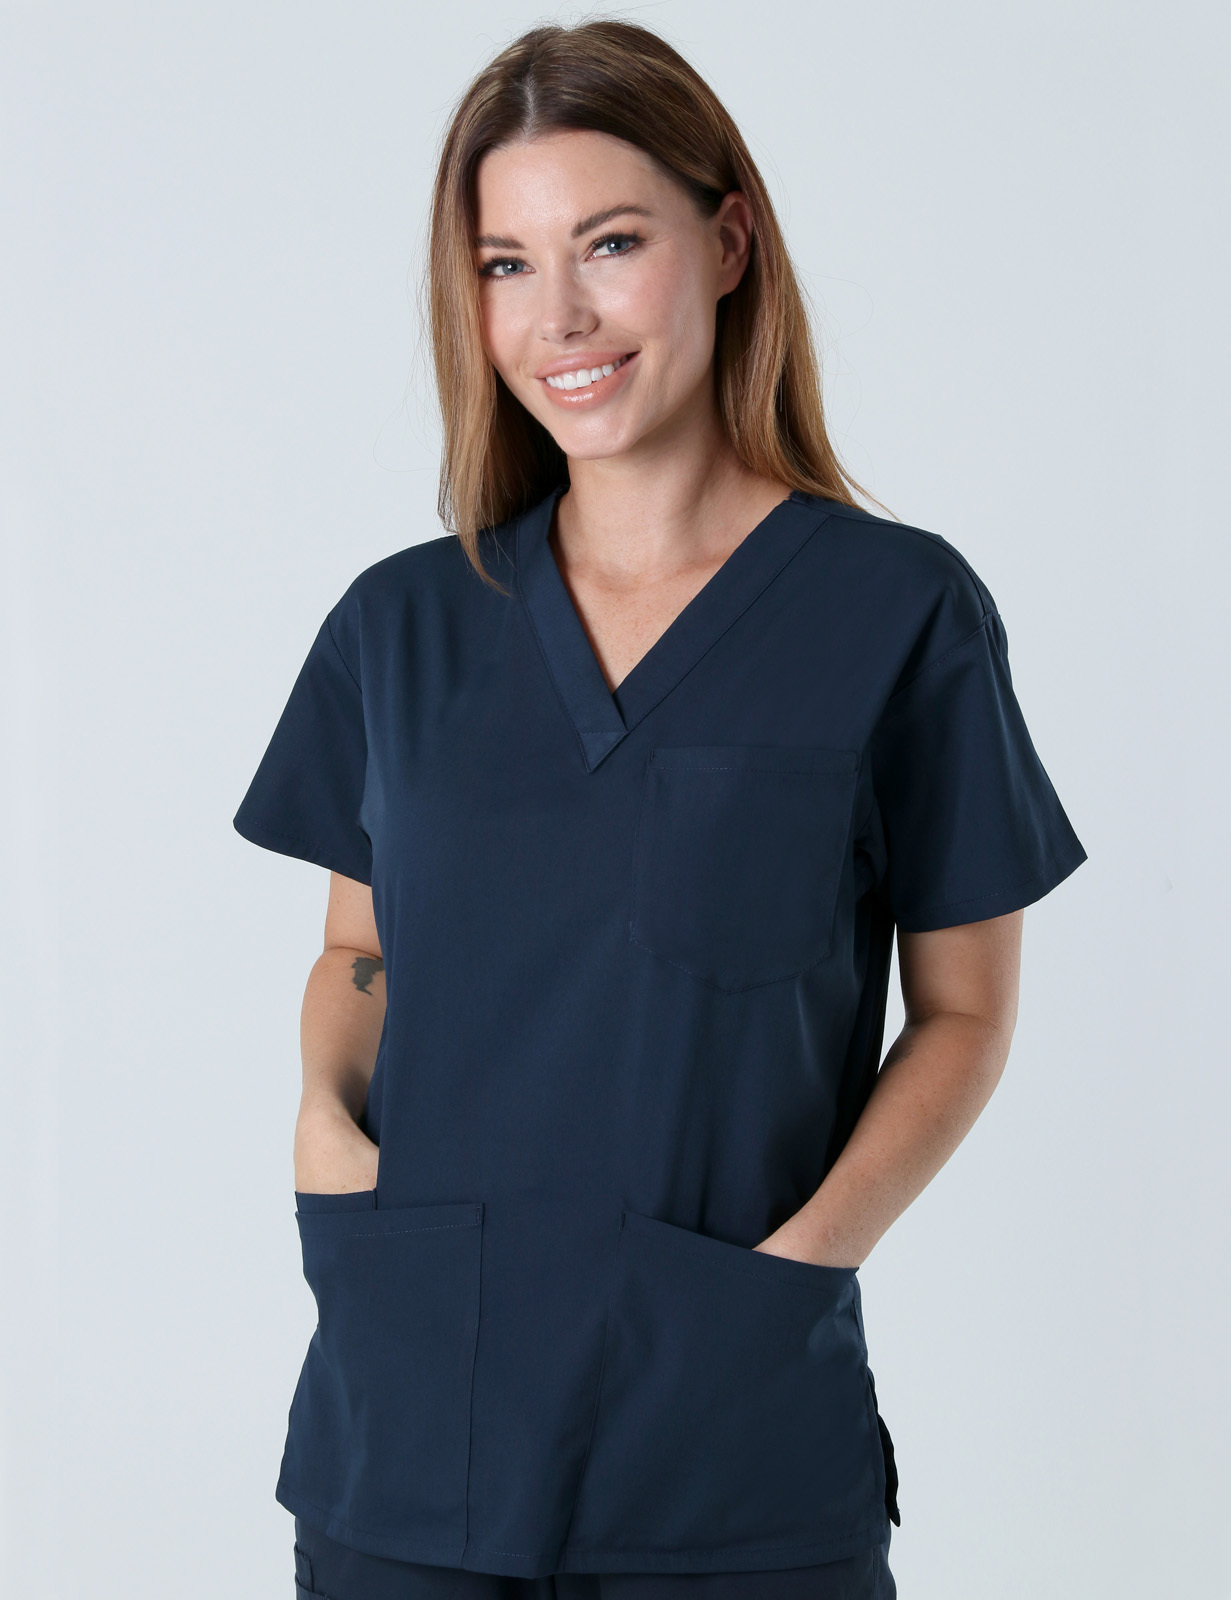 Monash Health - ER Nurse (4 Pocket Scrub Top and Cargo Pants in Navy incl Logos)